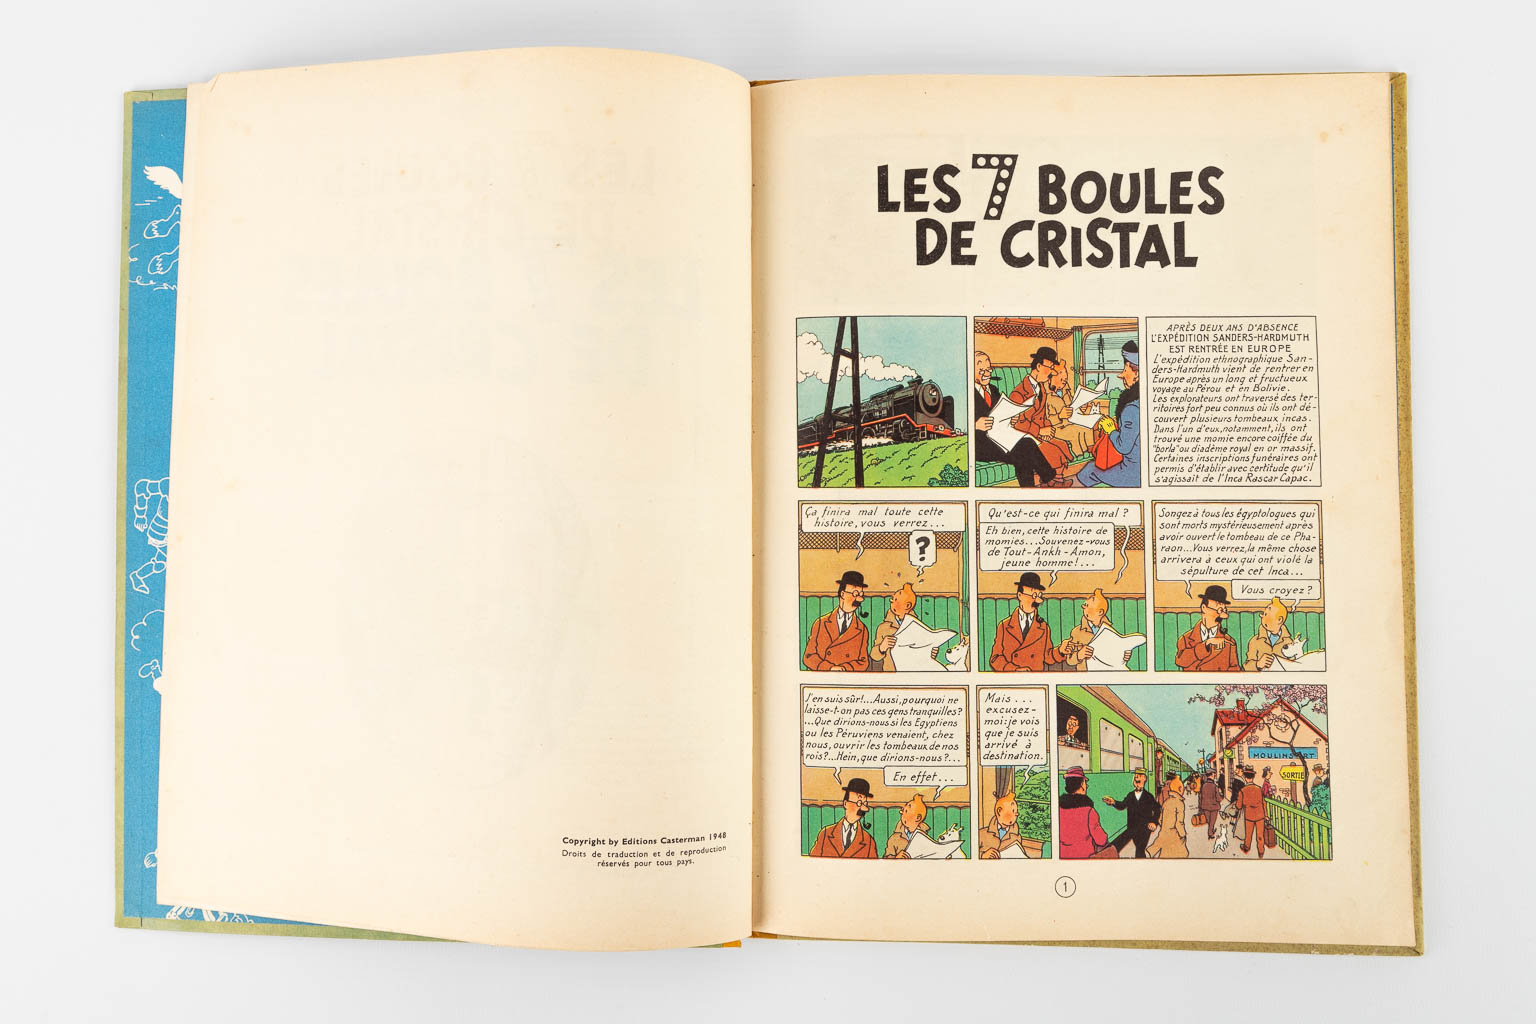 Hergé, Les Avontures De Tintin, Les 7 Boules De Cristal, een strip. 1948. (W:23,5 x H:30,5 cm)